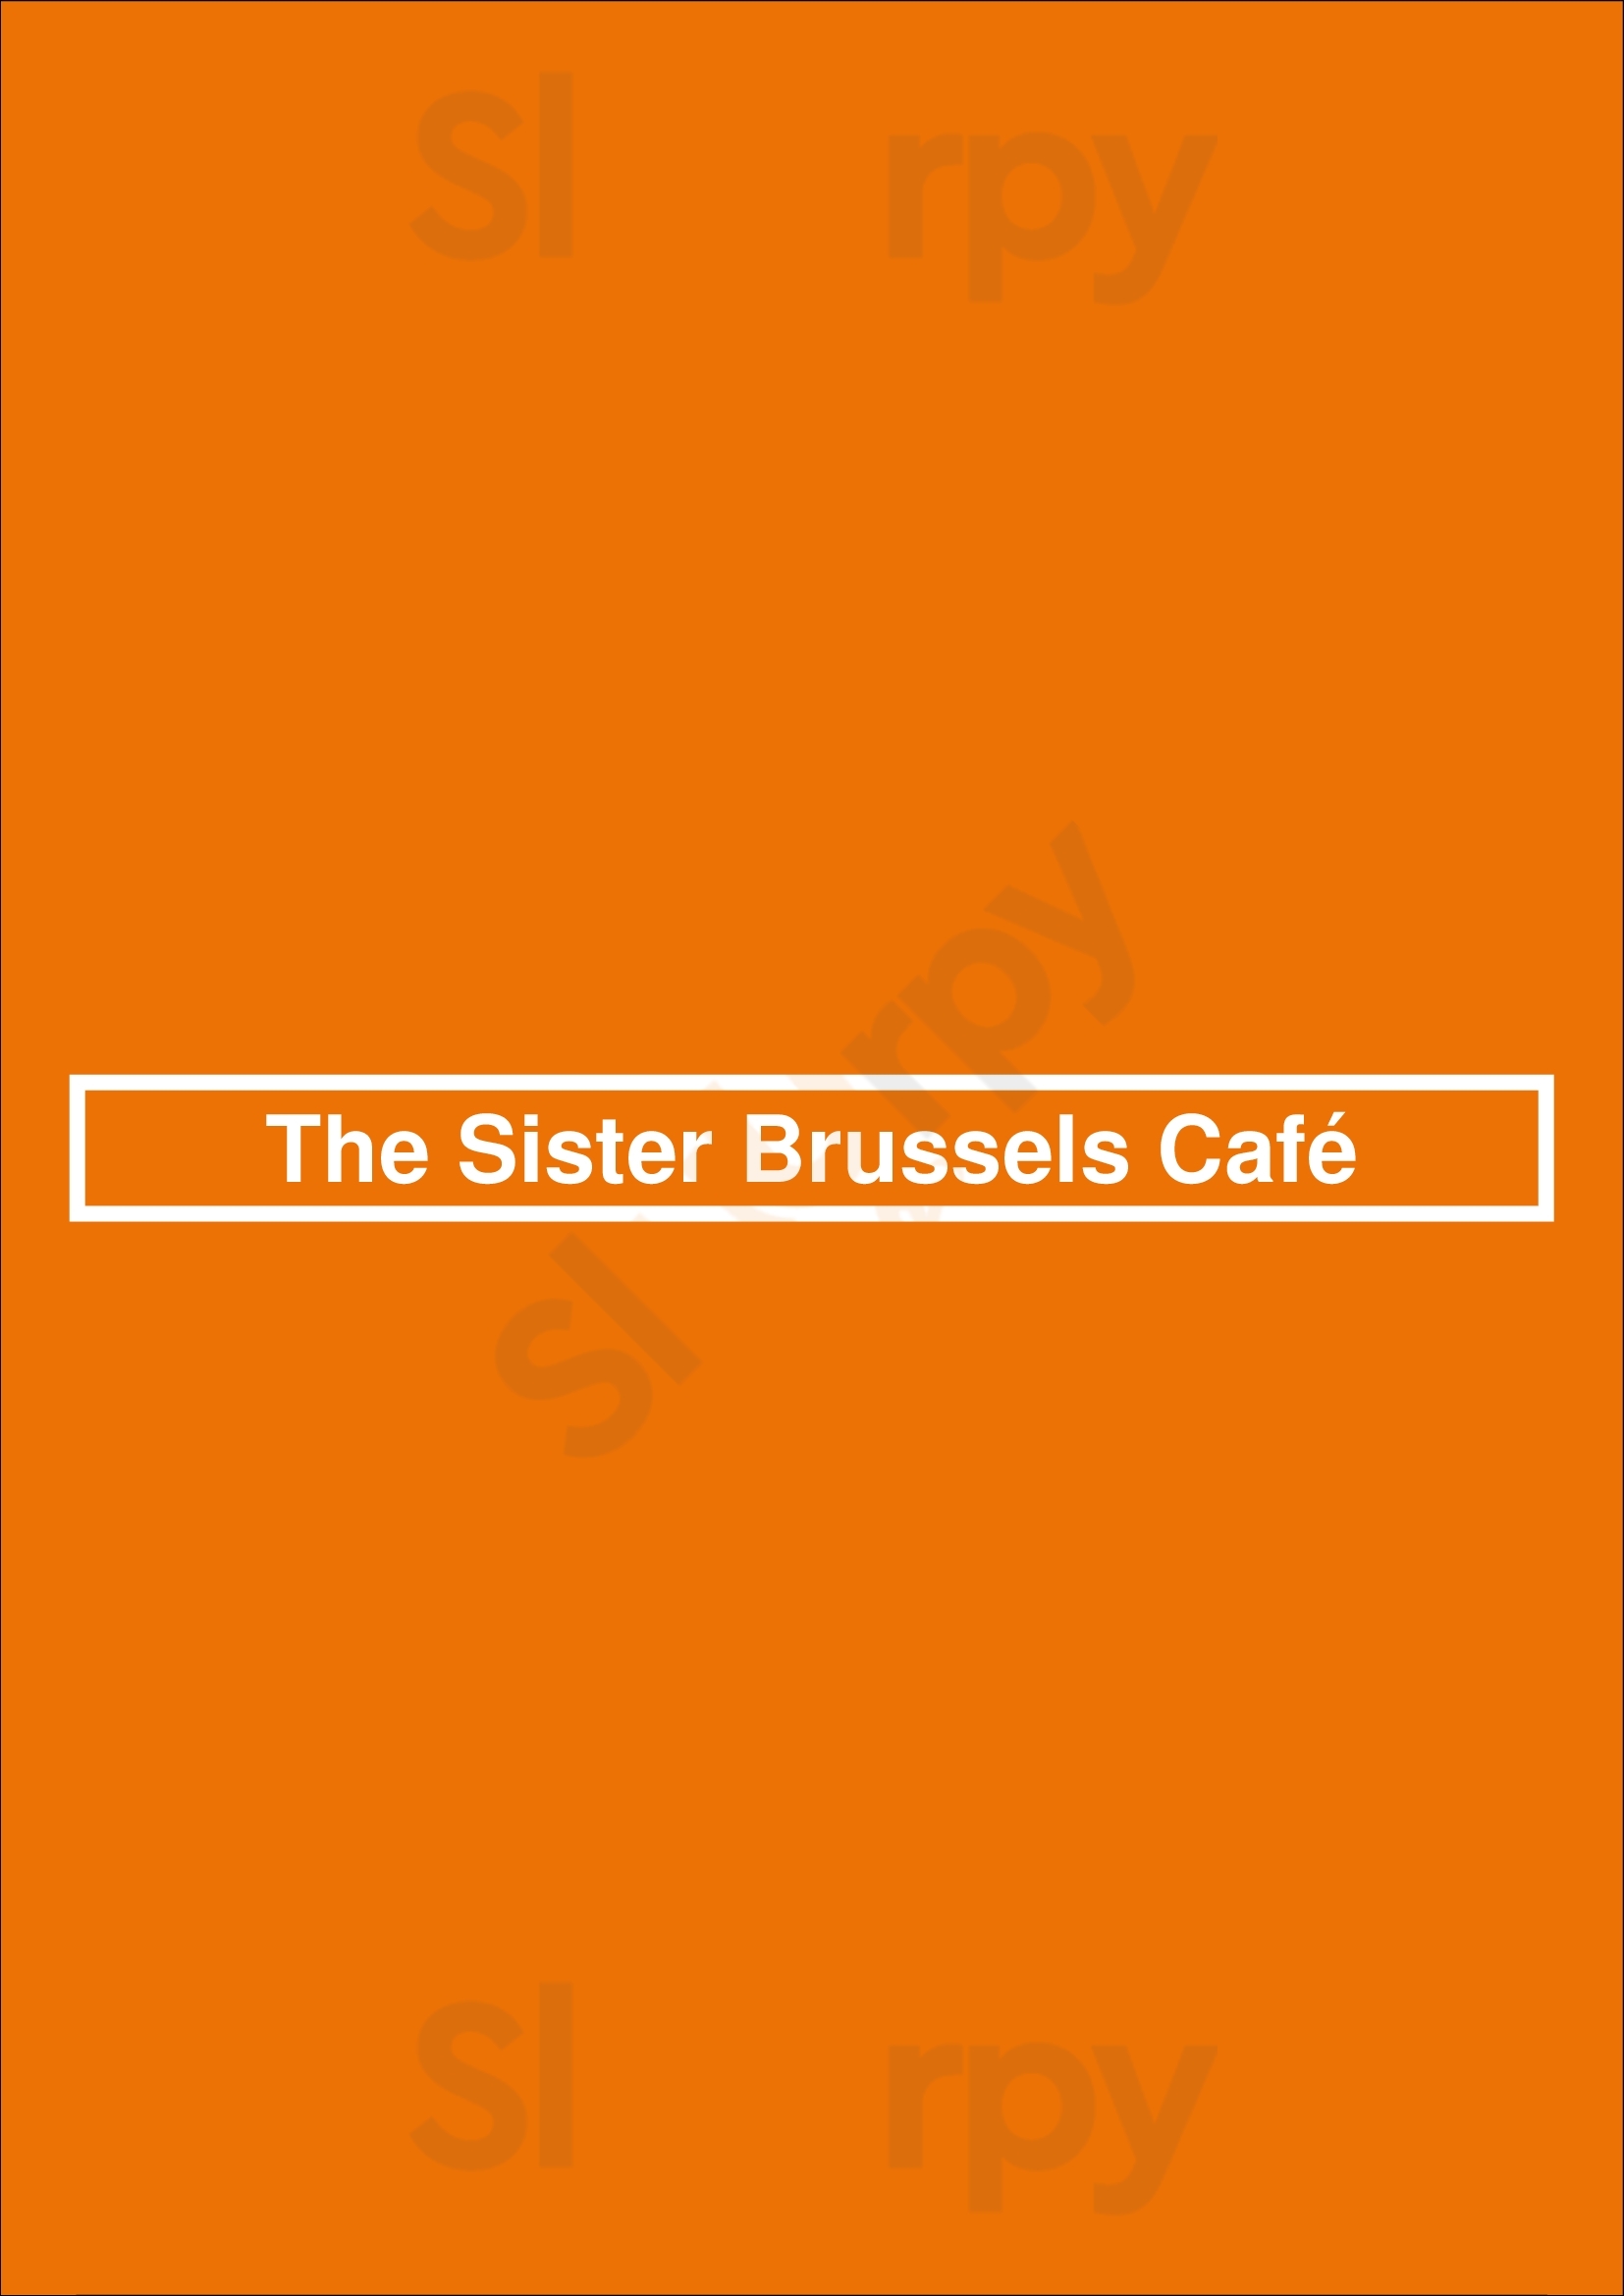 The Sister Brussels Café Bruxelles Menu - 1